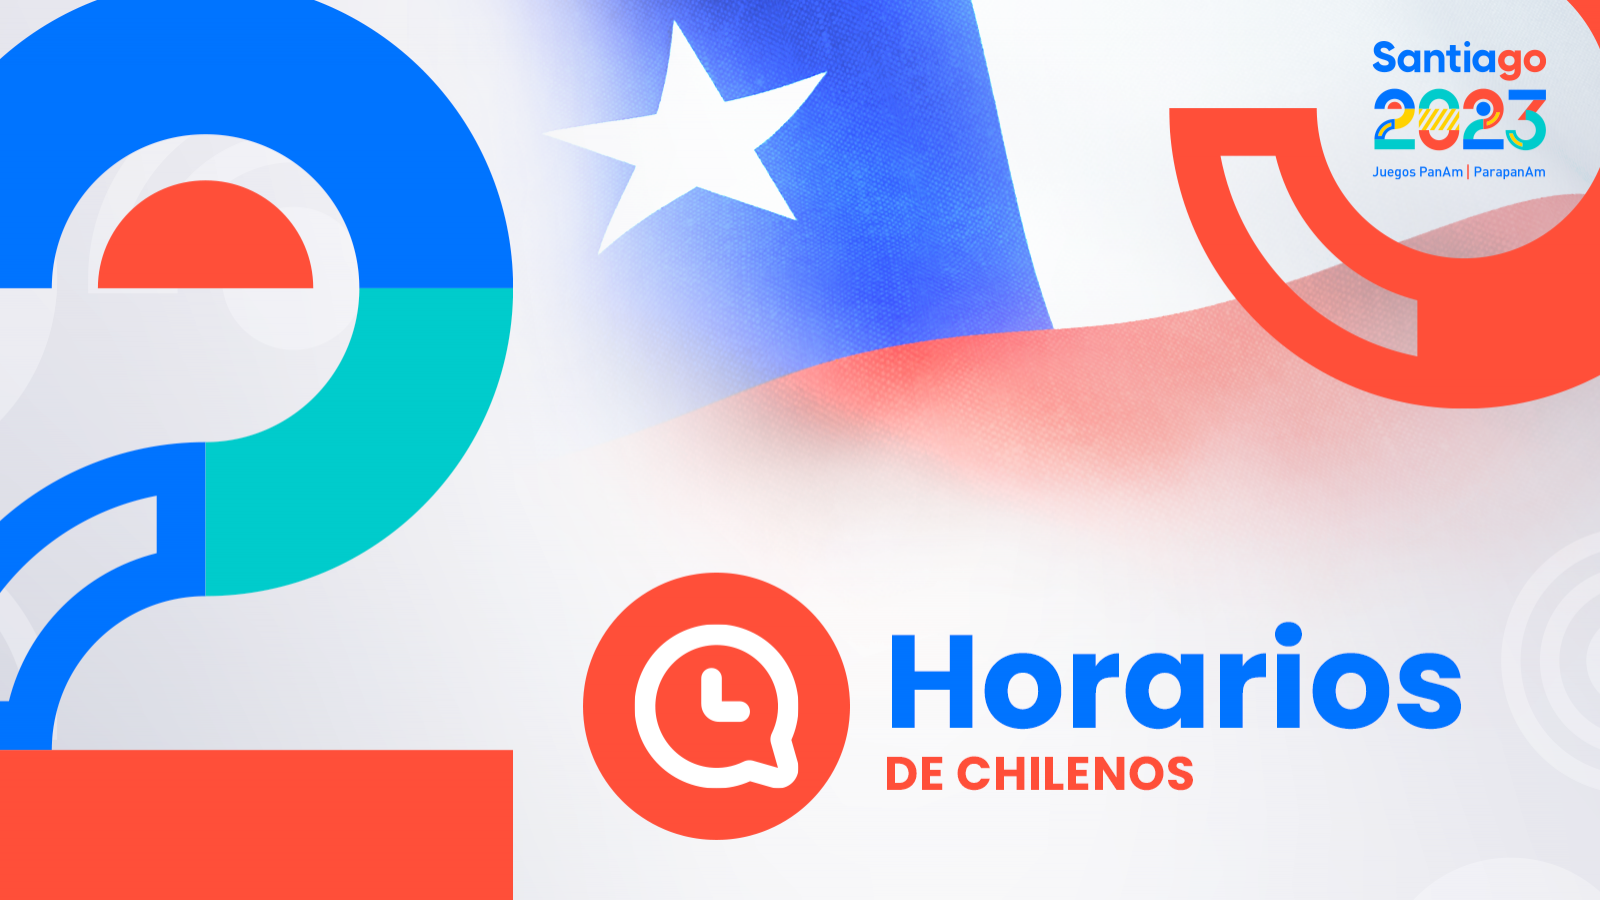 HORARIOS de chilenos en Santiago 2023: miércoles 1 de noviembre